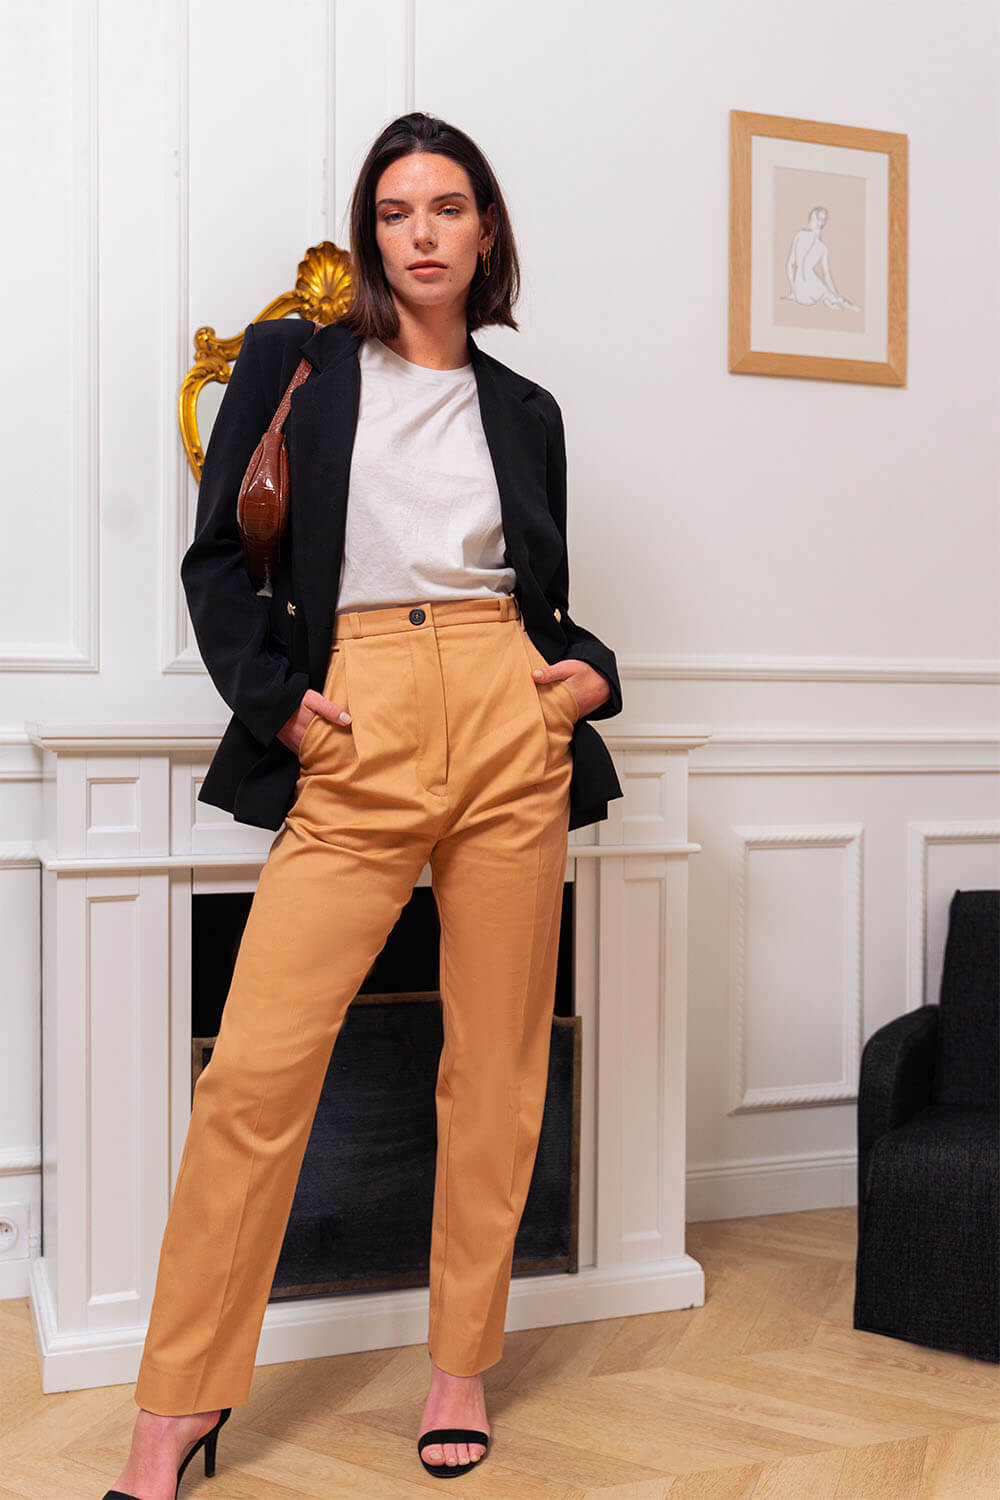 Pantalon Taille Haute Femme : Comment le Choisir ? – Avangarde France